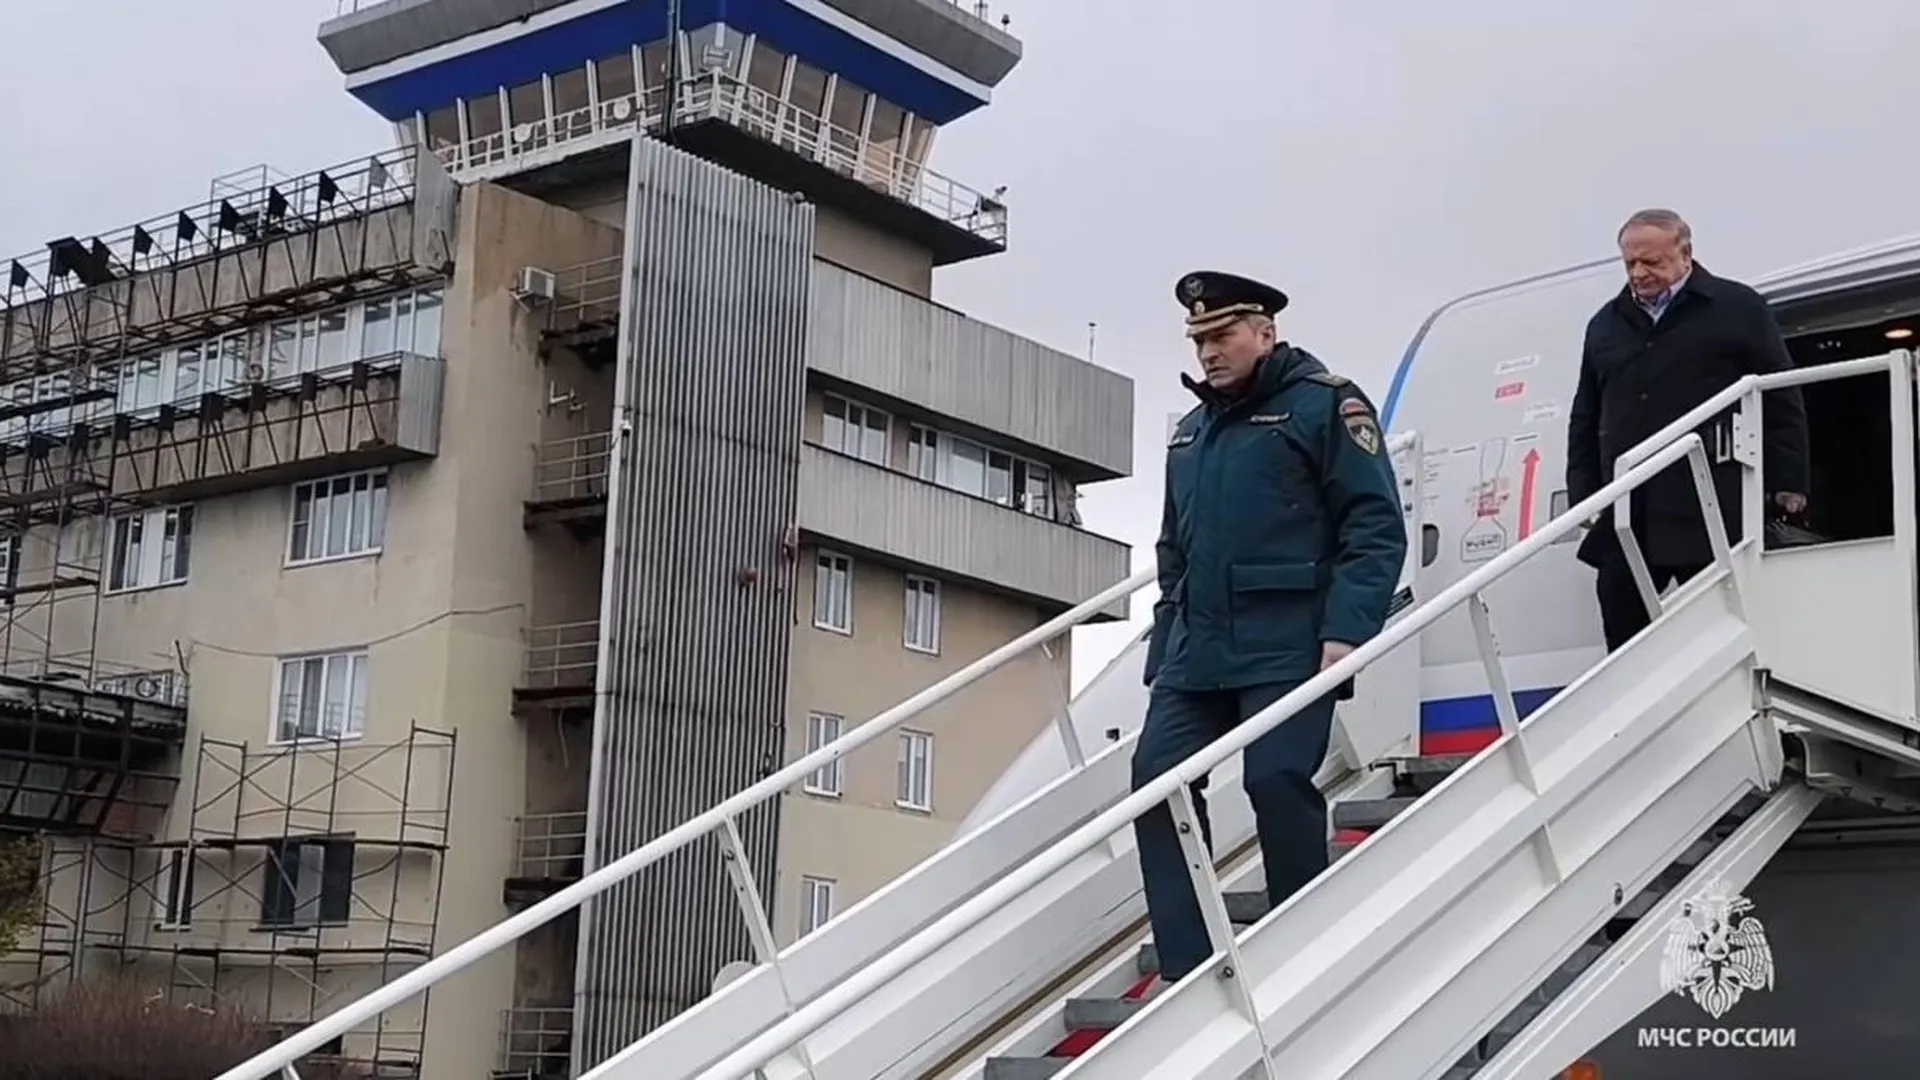 Прибытие главы МЧС России Александра Куренкова в Оренбургскую область. ВИДЕО